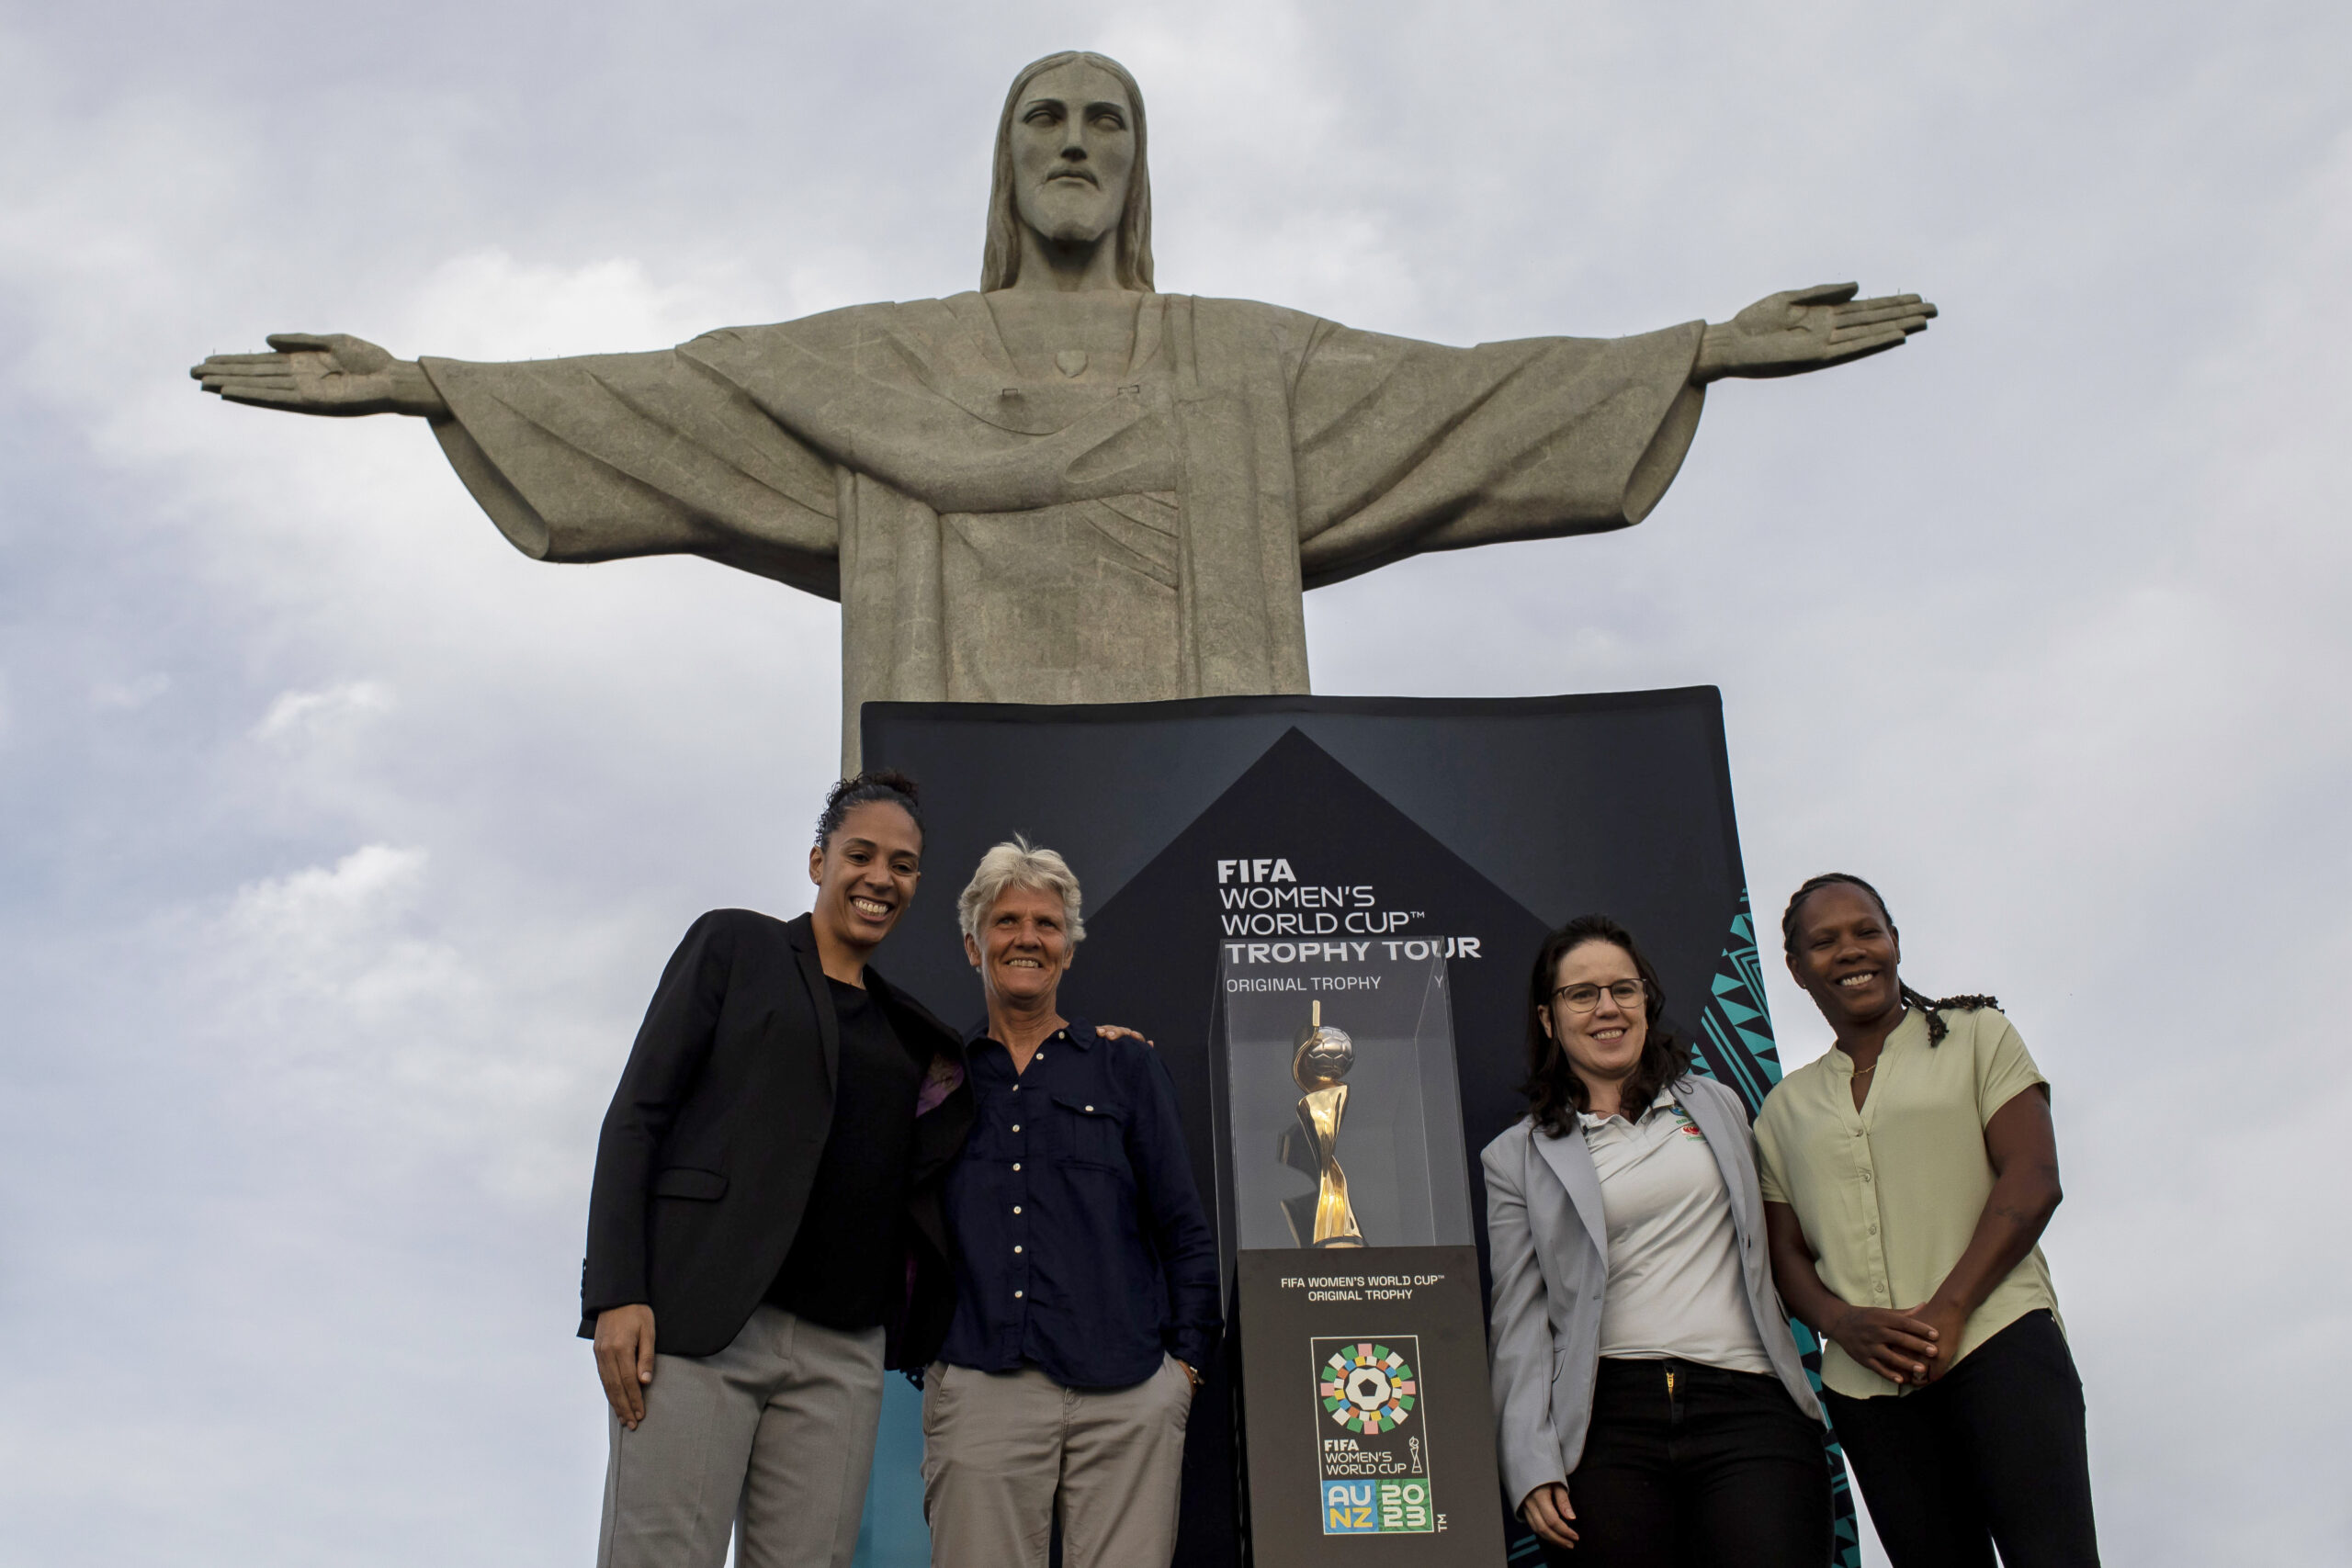 Brazil Women’s World Cup Trophy